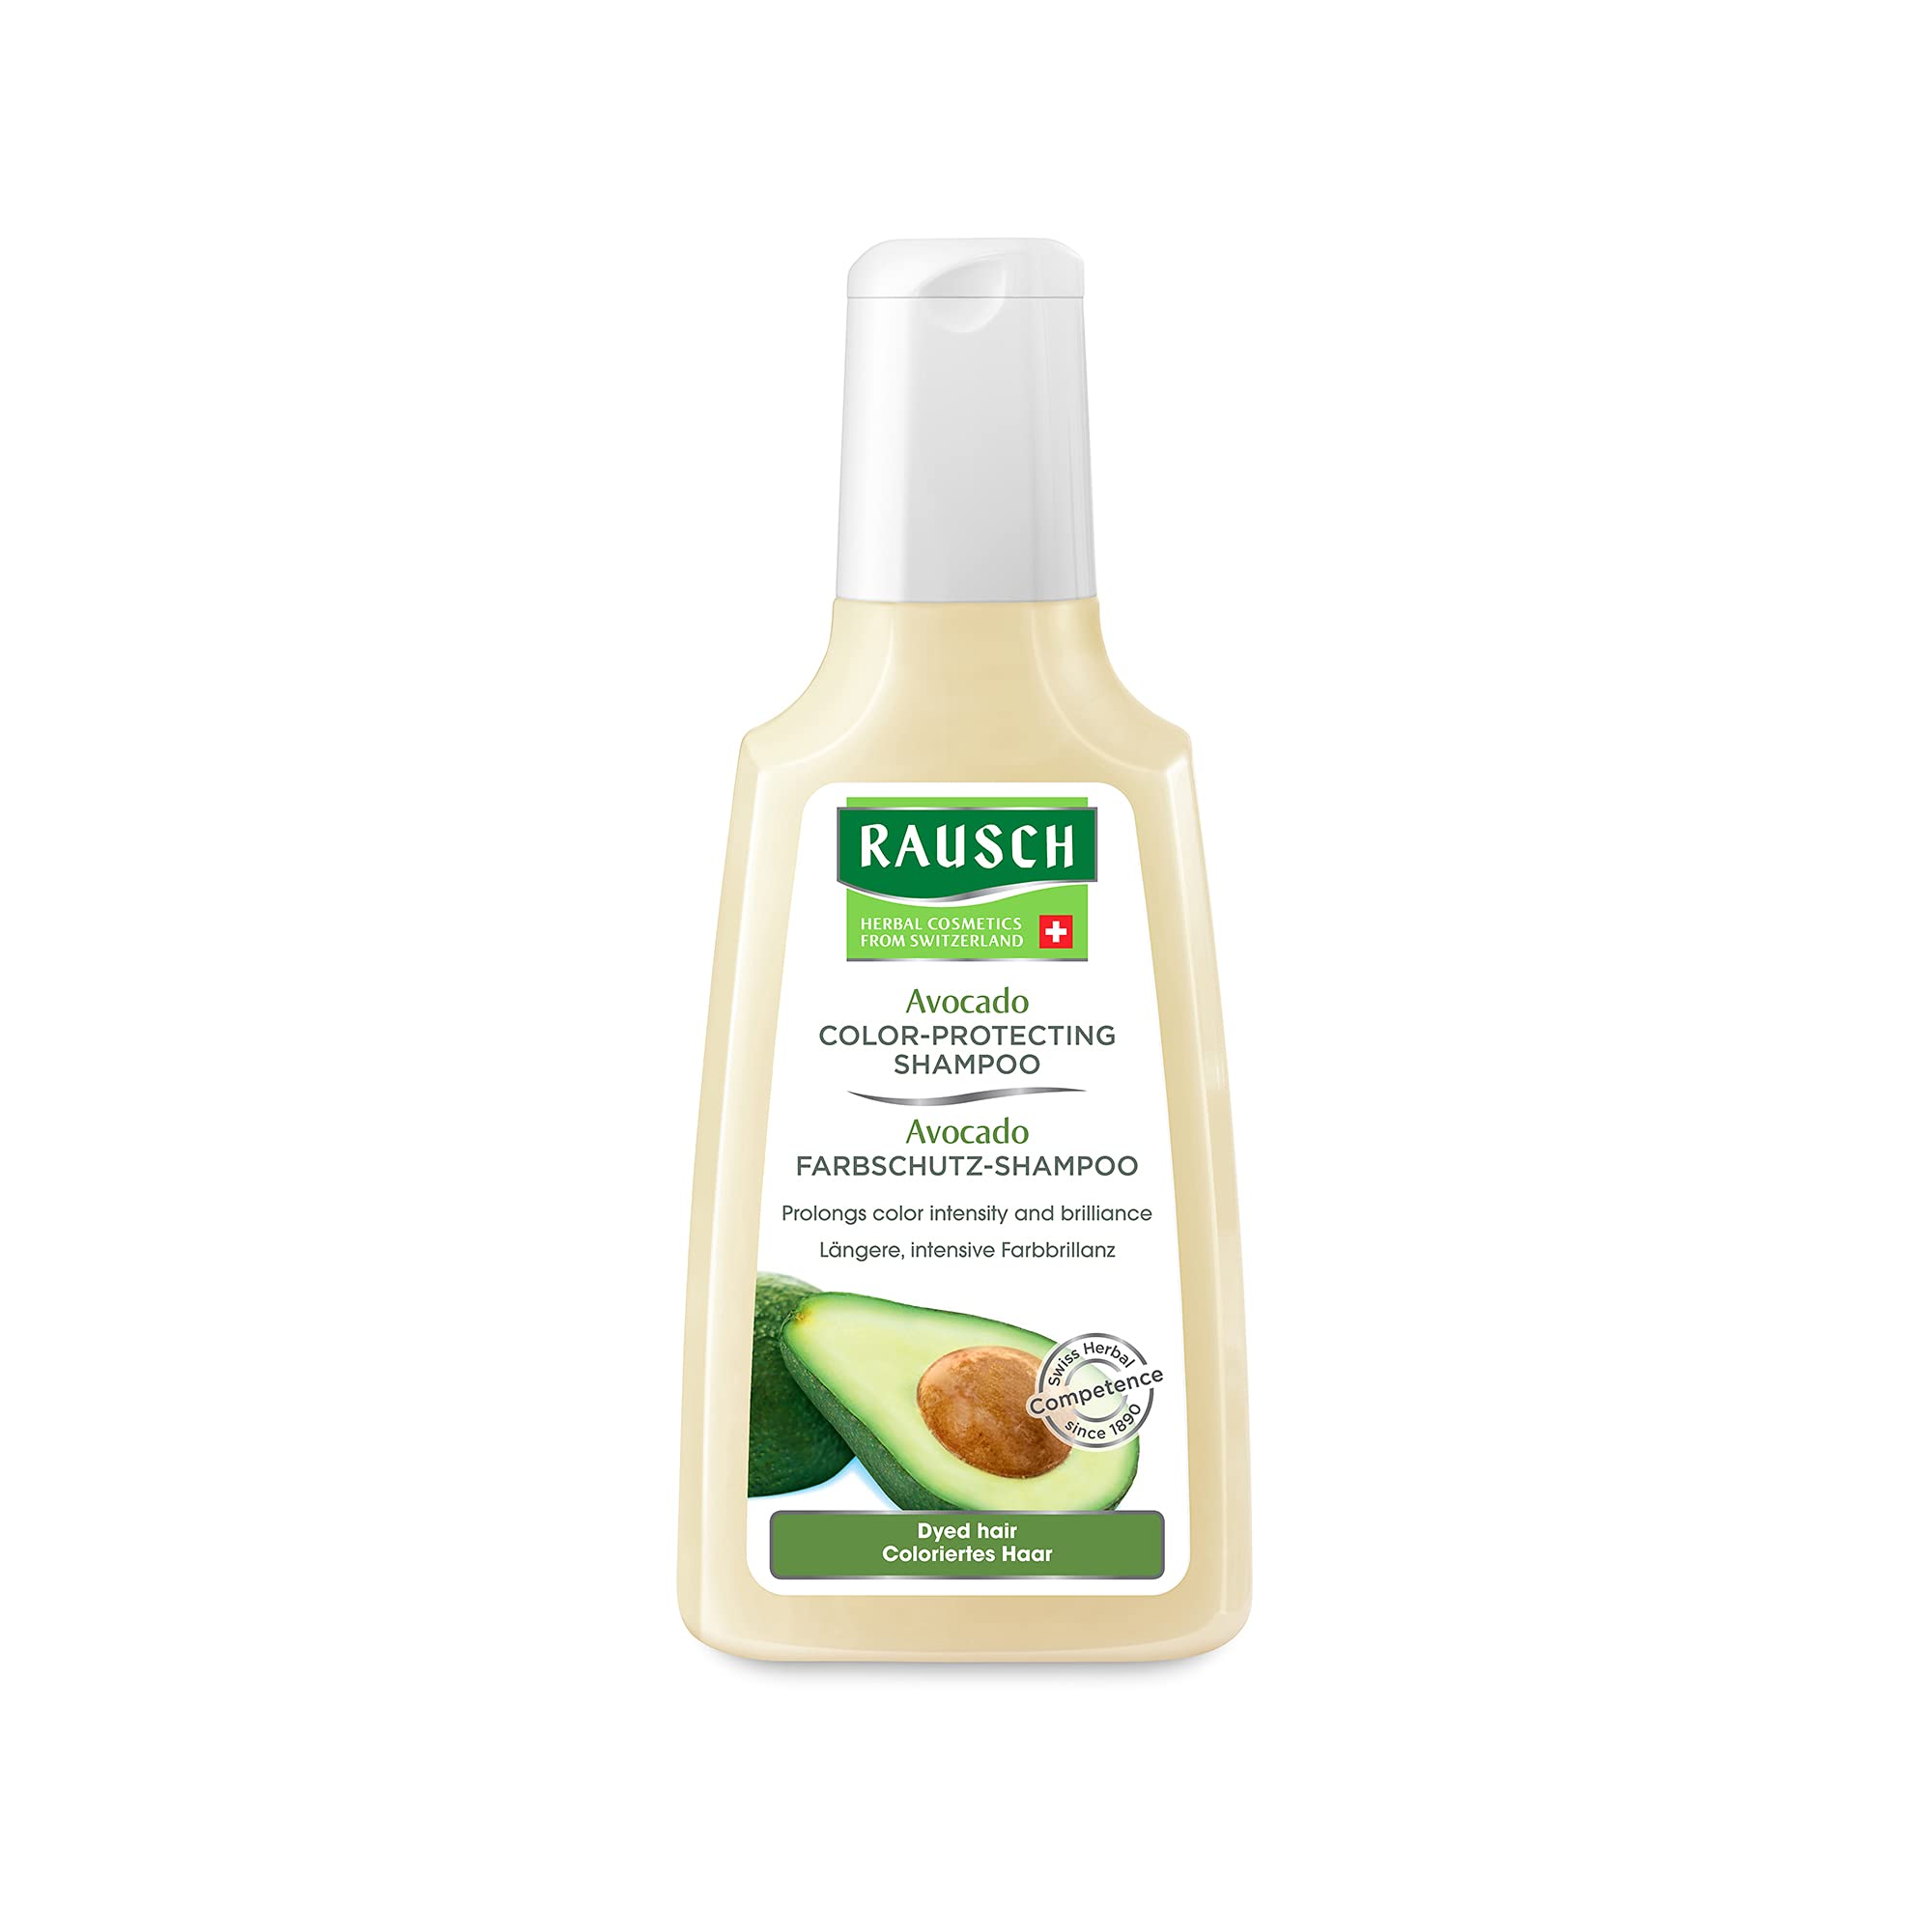 RAUSCH Avocado Color-Protecting Shampoo 200 ml